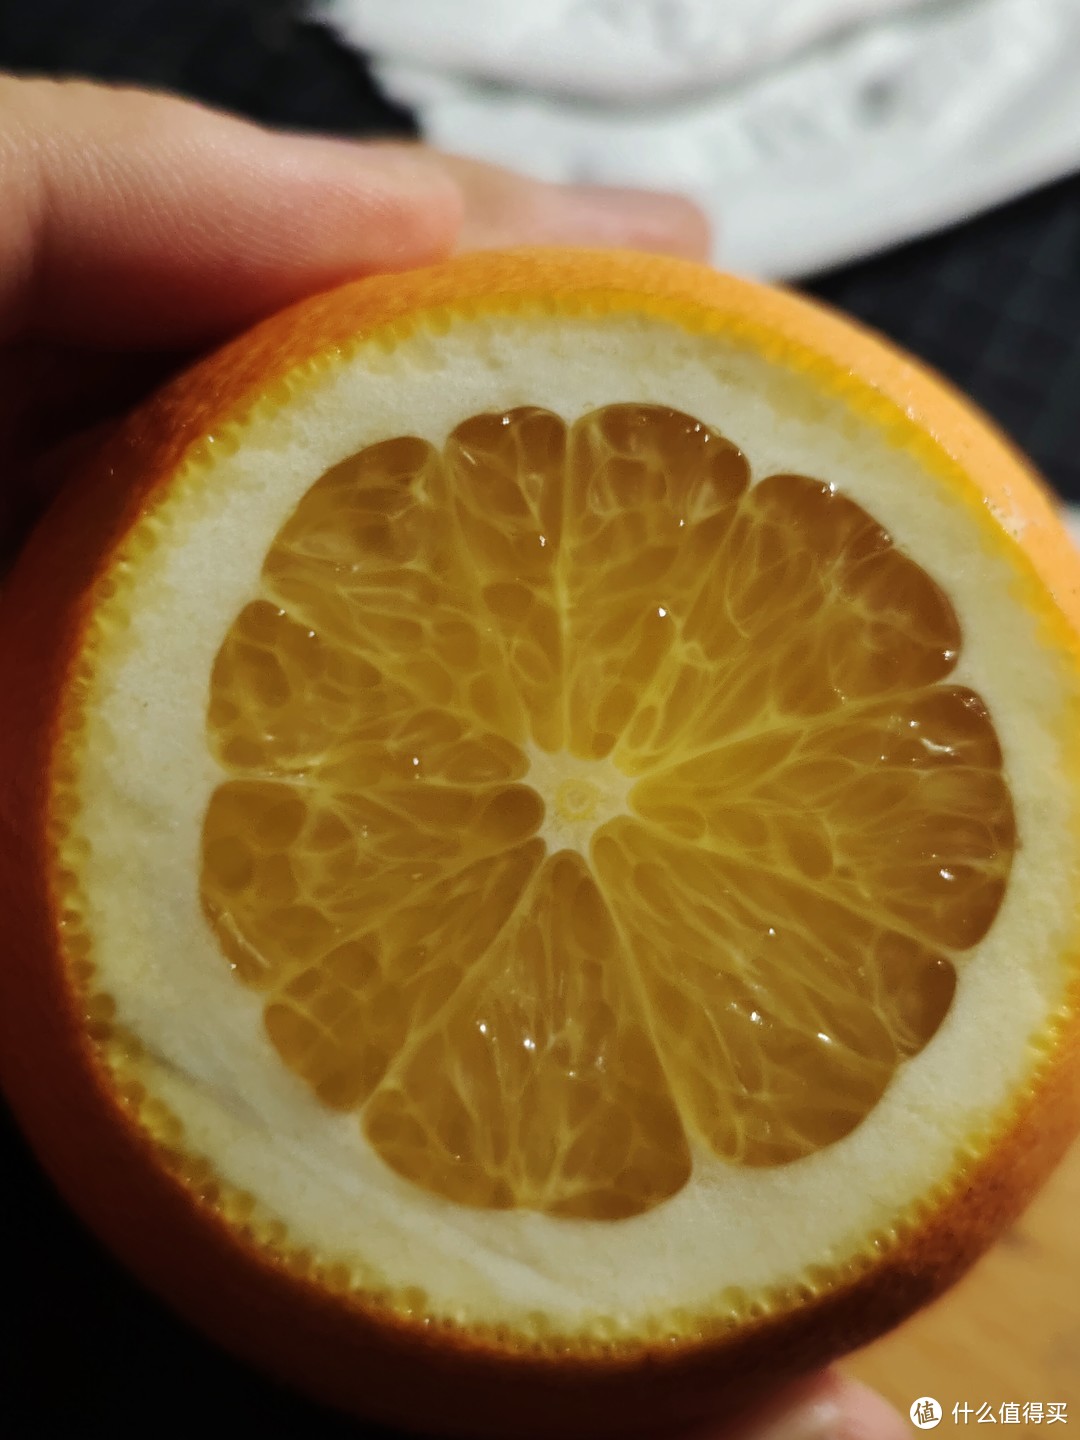 双十二买的橘子解决了我喉咙吞刀子的痛苦